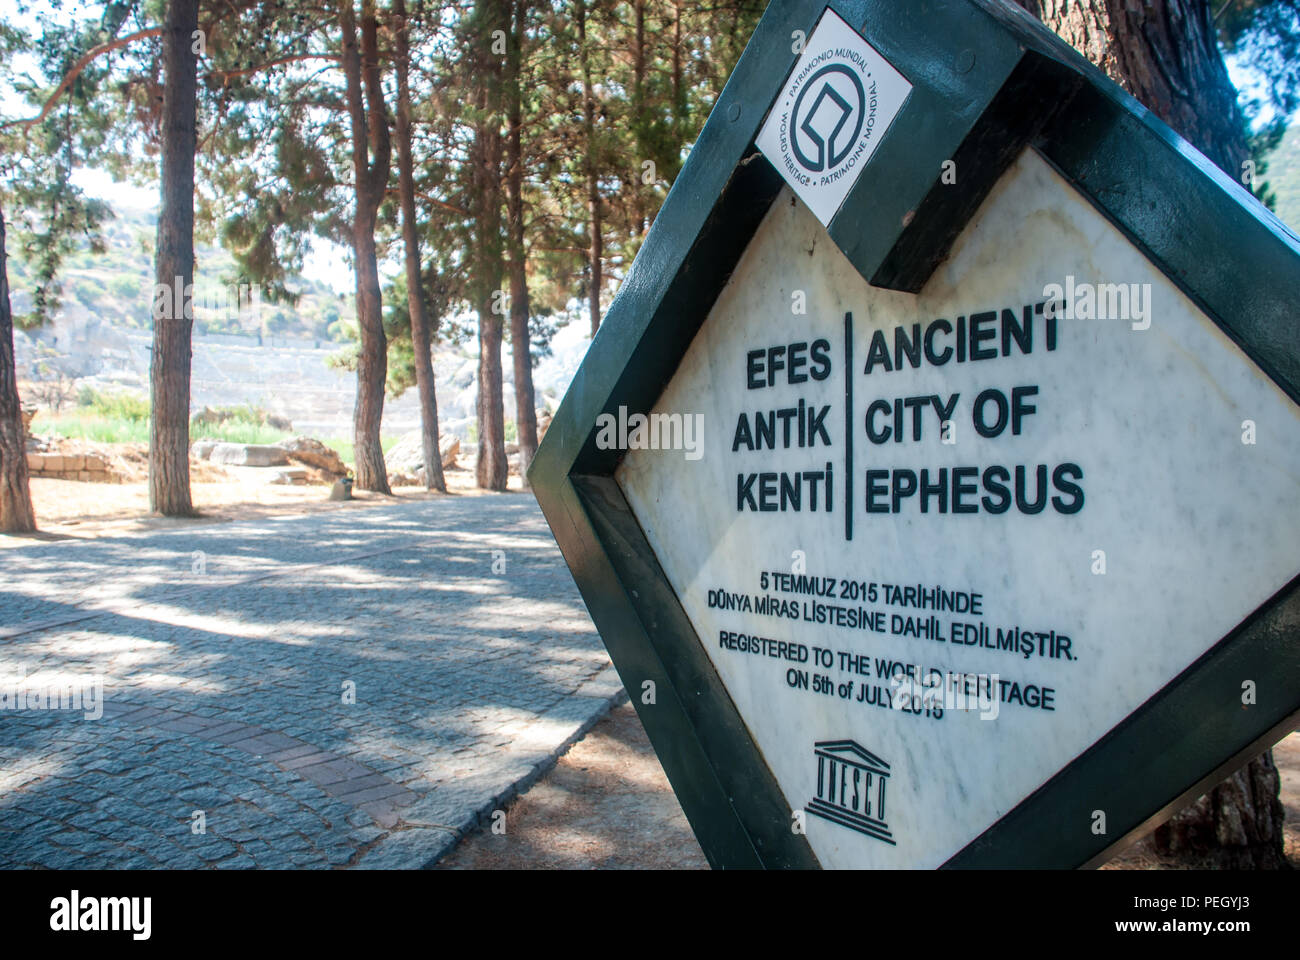 Sign in inglese e turco in entrata della città antica di Efeso e anfiteatro in background, Izmir, Turchia Foto Stock